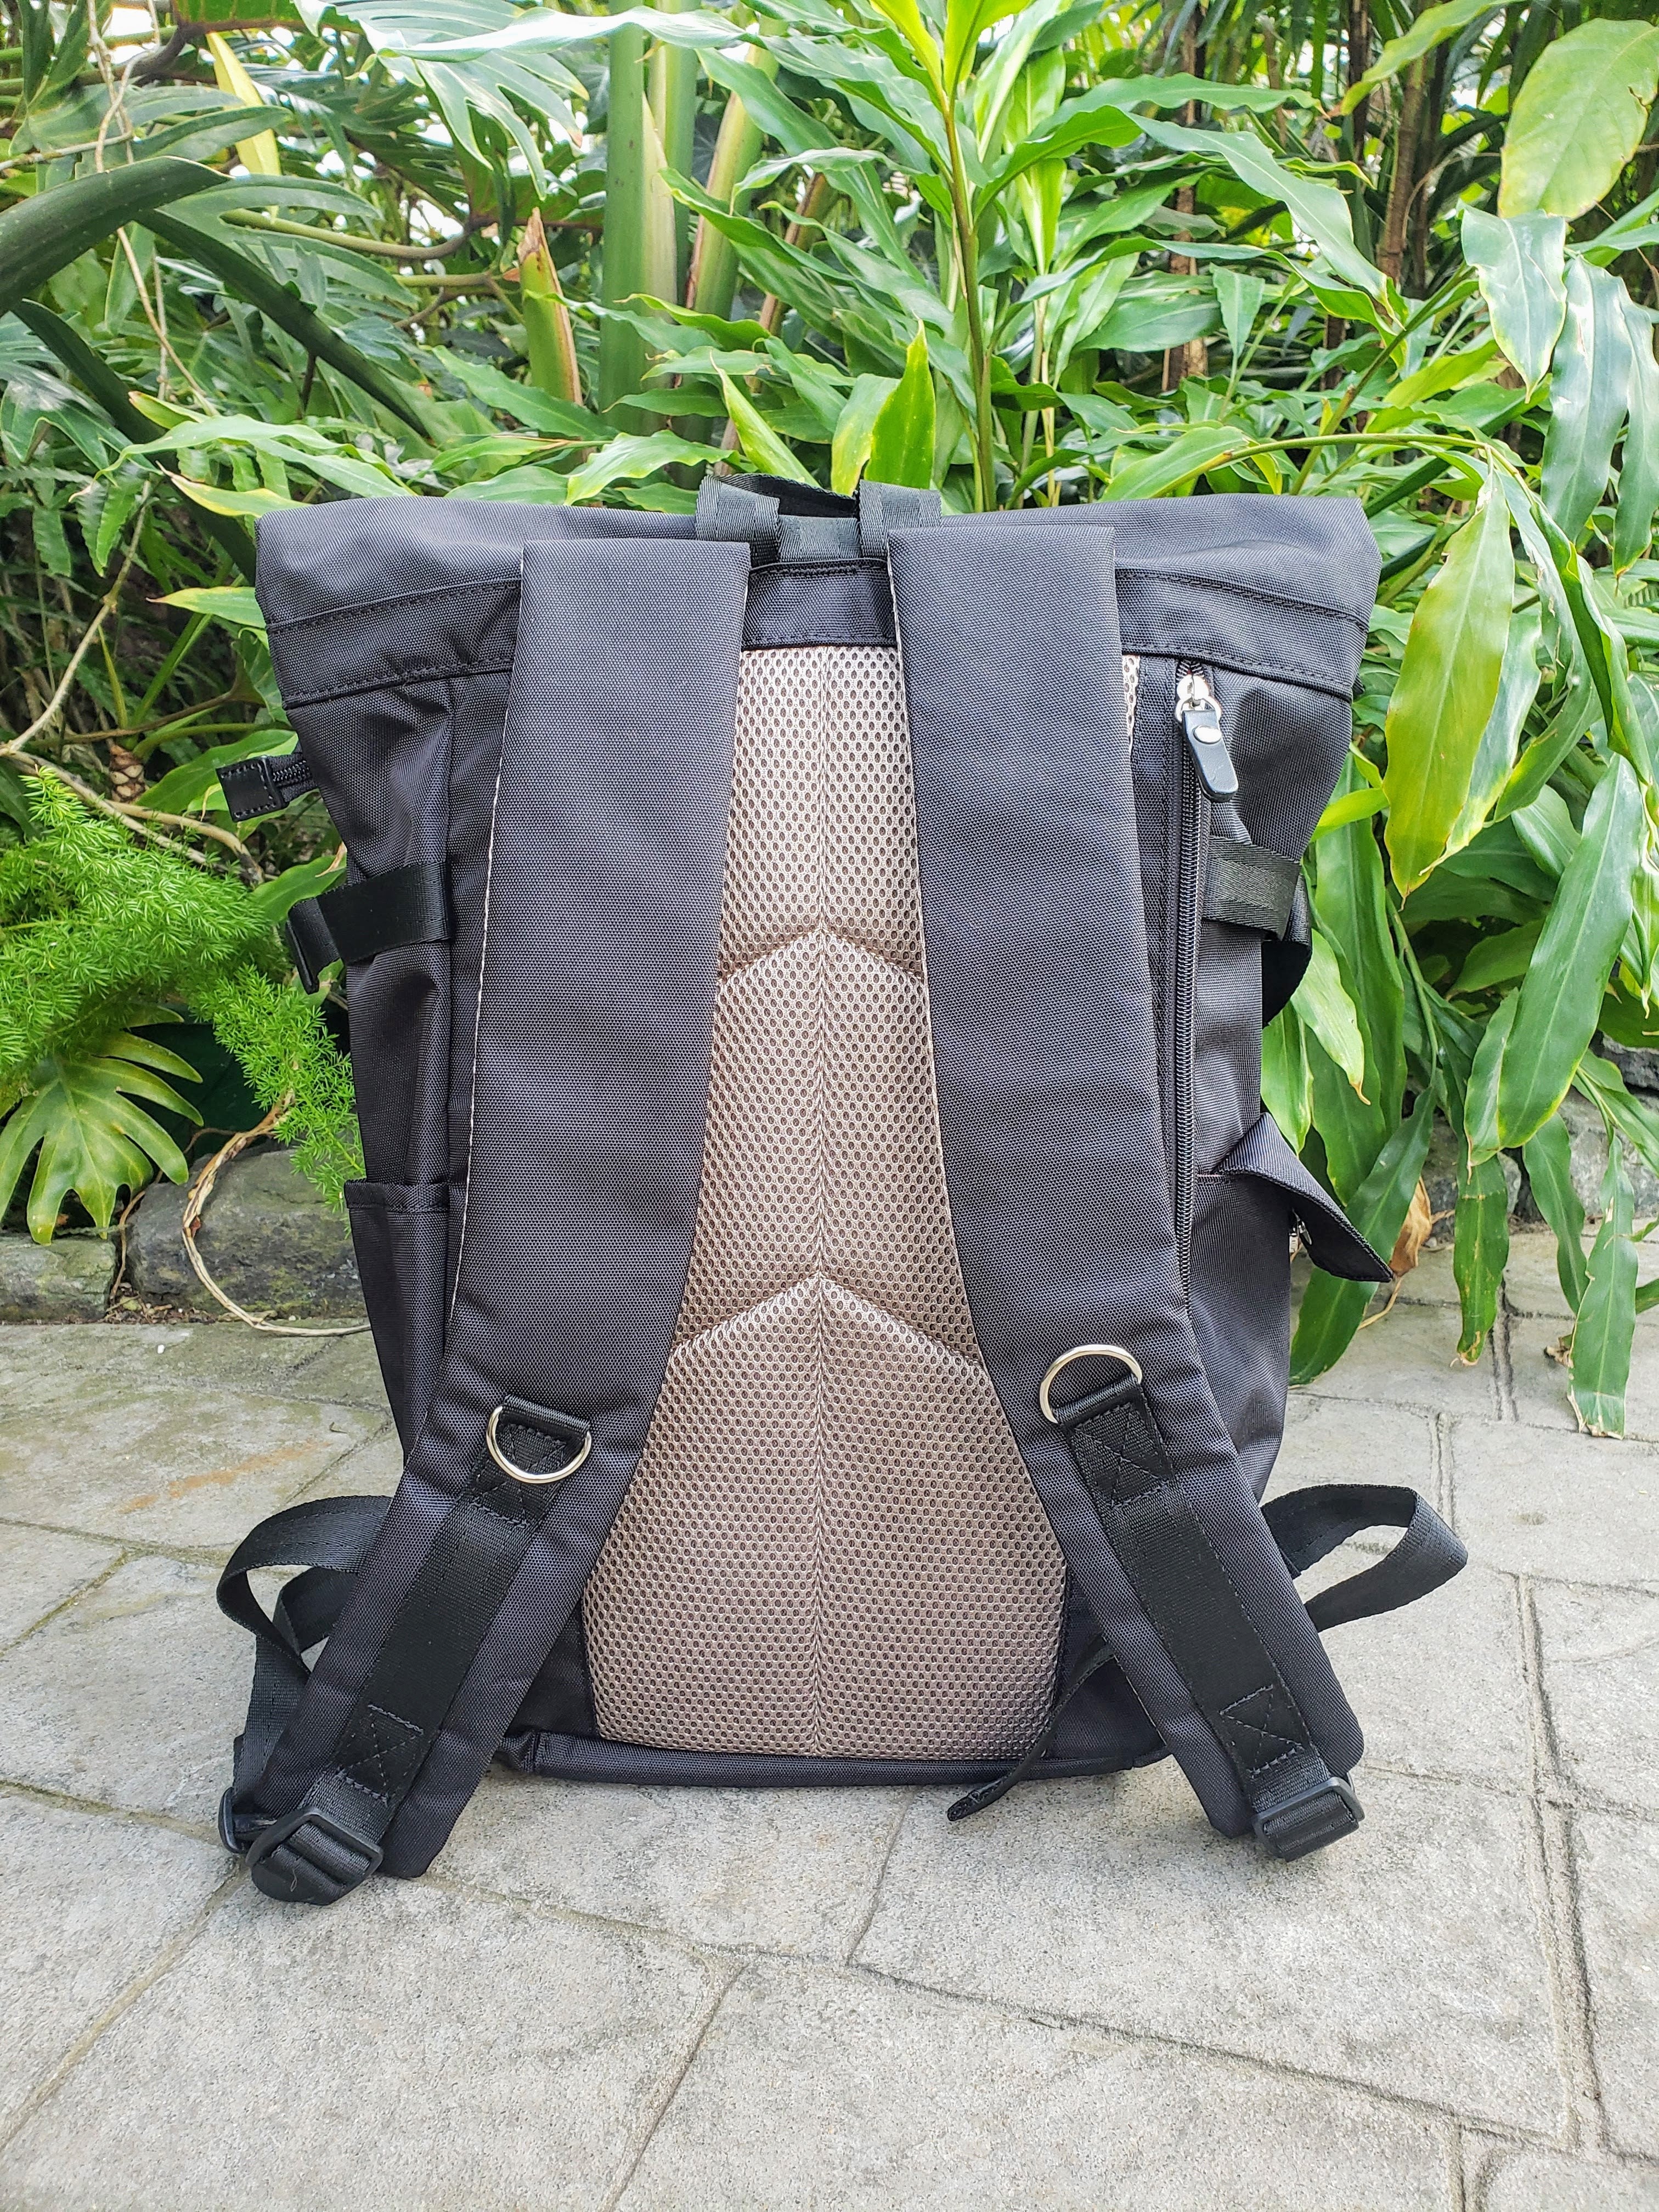 Harvest Label | Rolltop Neo Backpack, Backpacks, Harvest Label, Defiance Outdoor Gear Co.